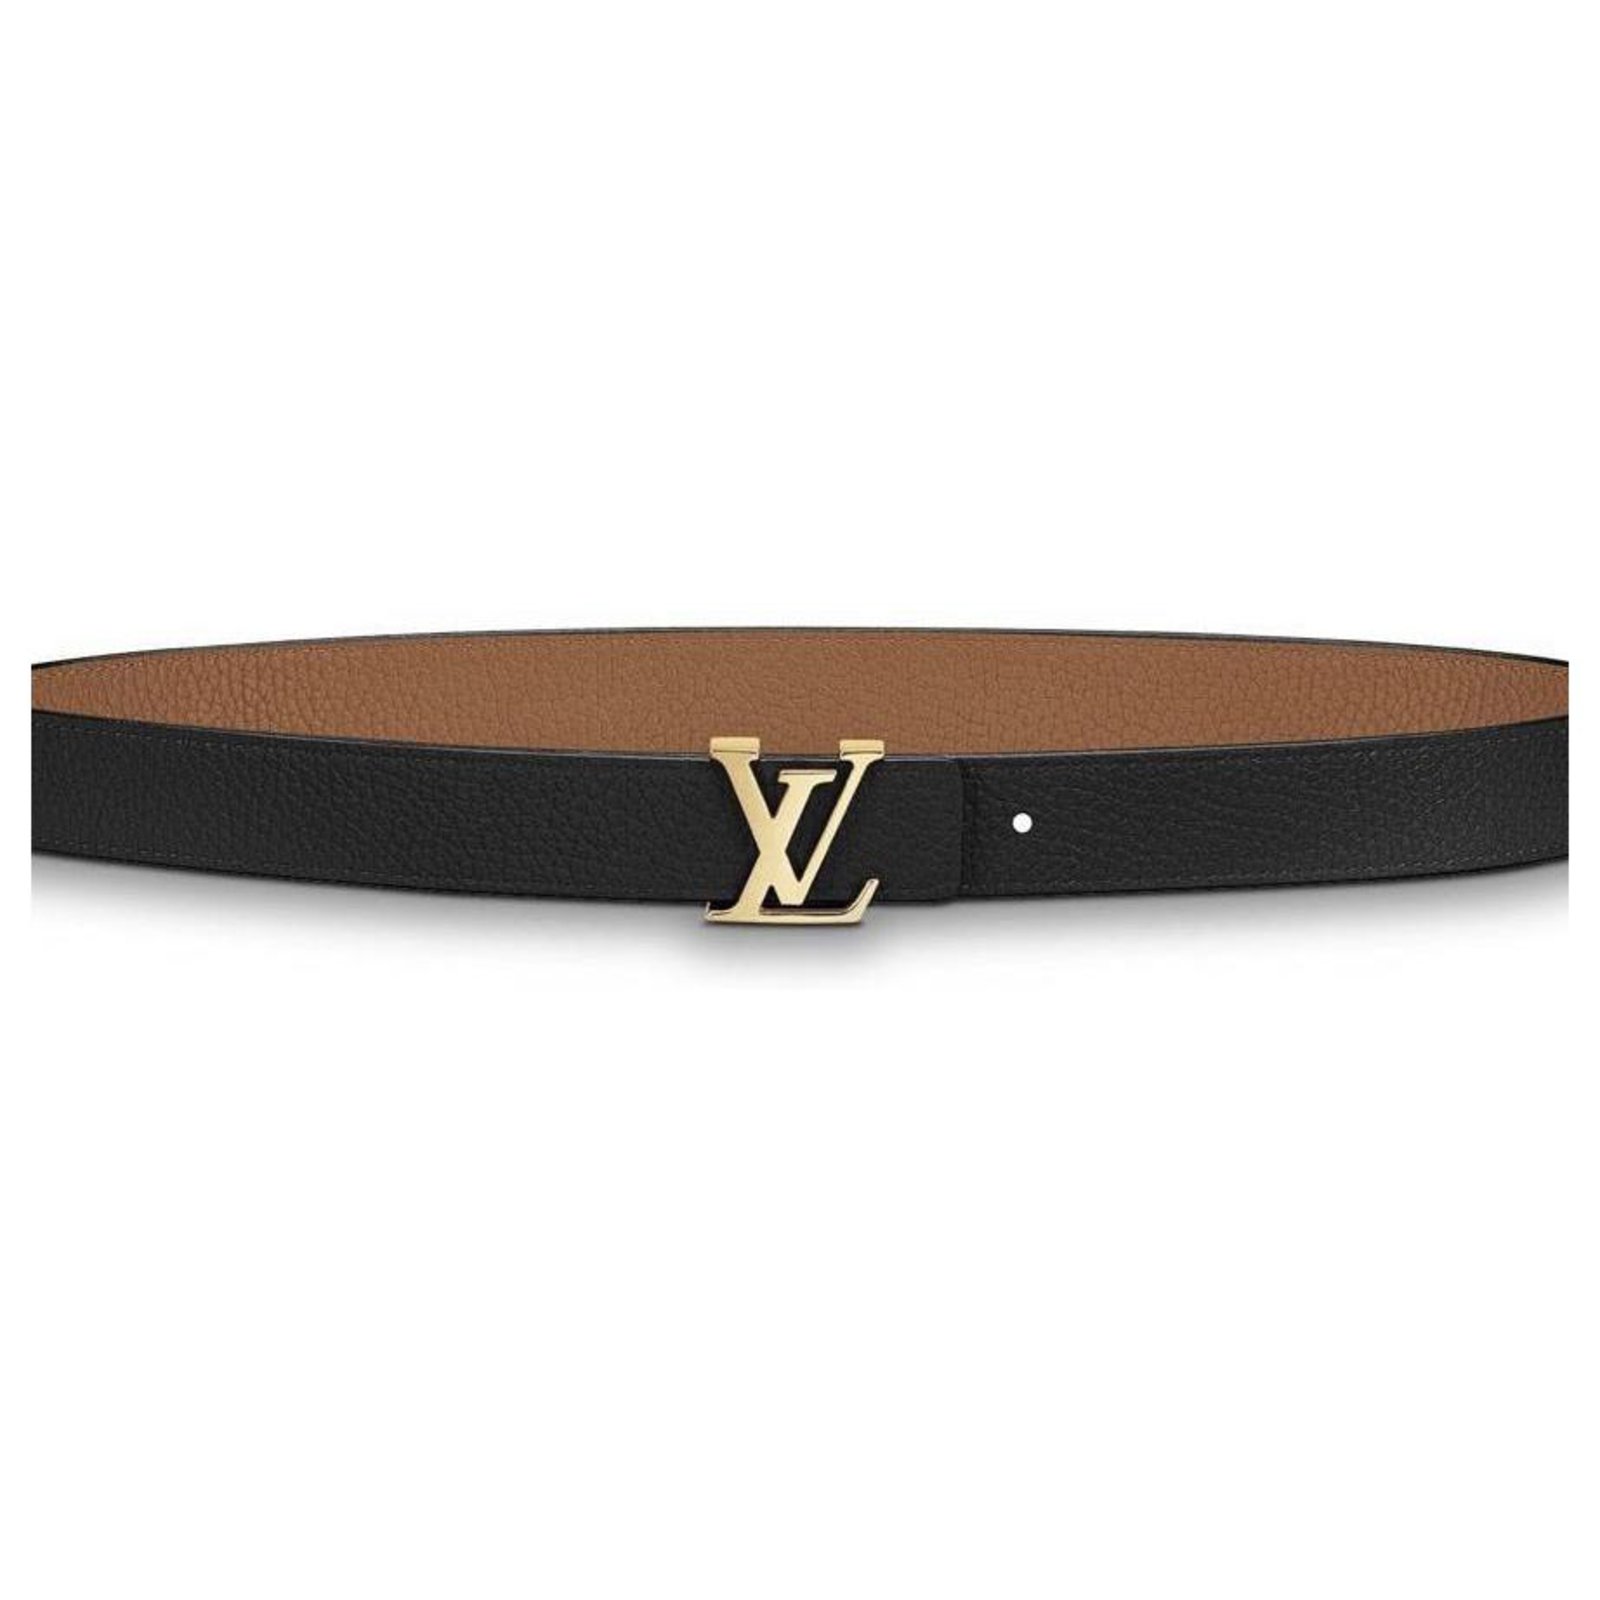 LOUIS VUITTON LV Initiales Leather Reversible Belt Black